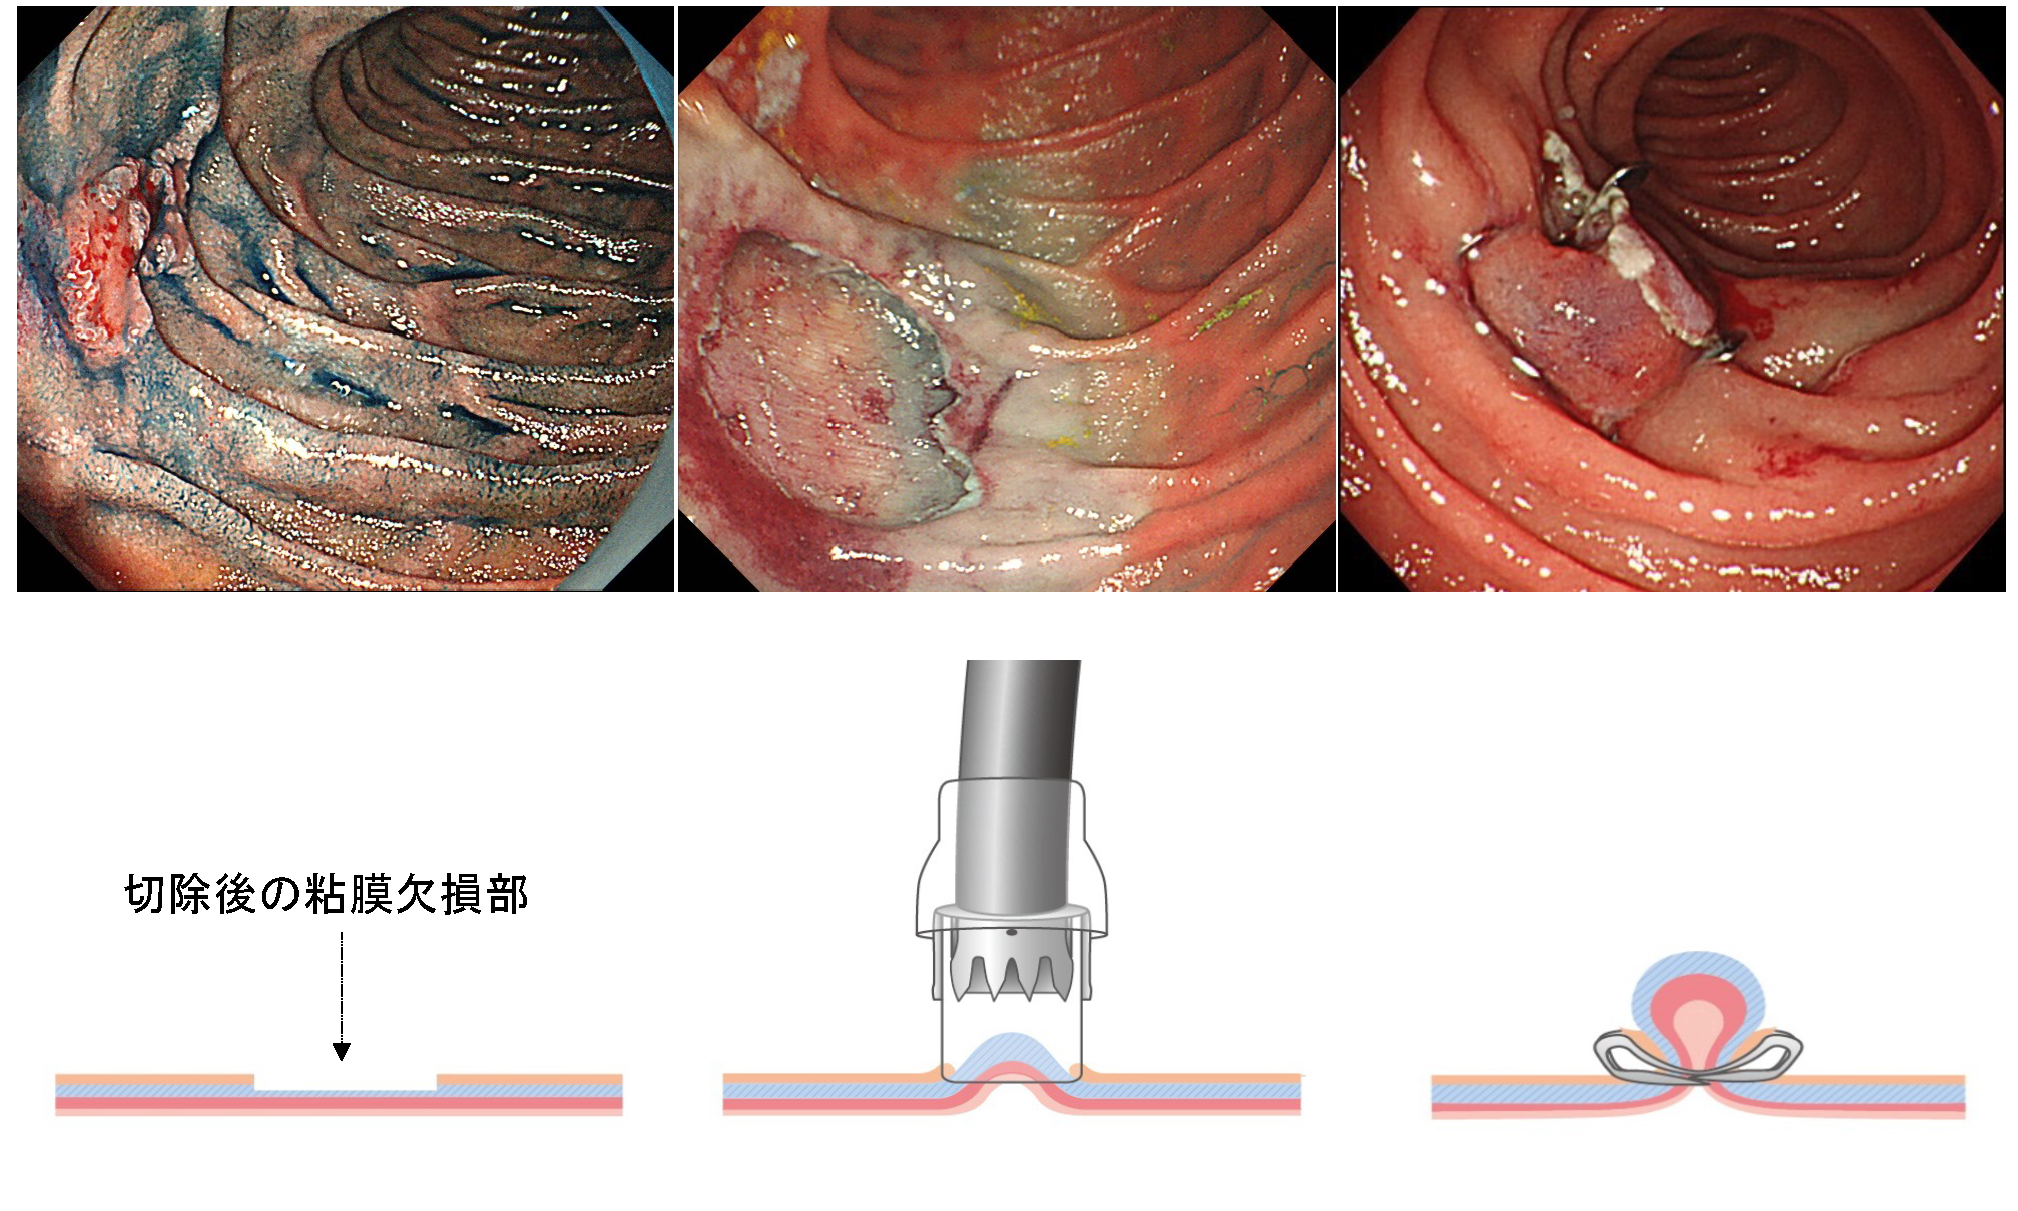 消化管グループの内視鏡治療の特徴 | 埼玉医科大学国際医療センター